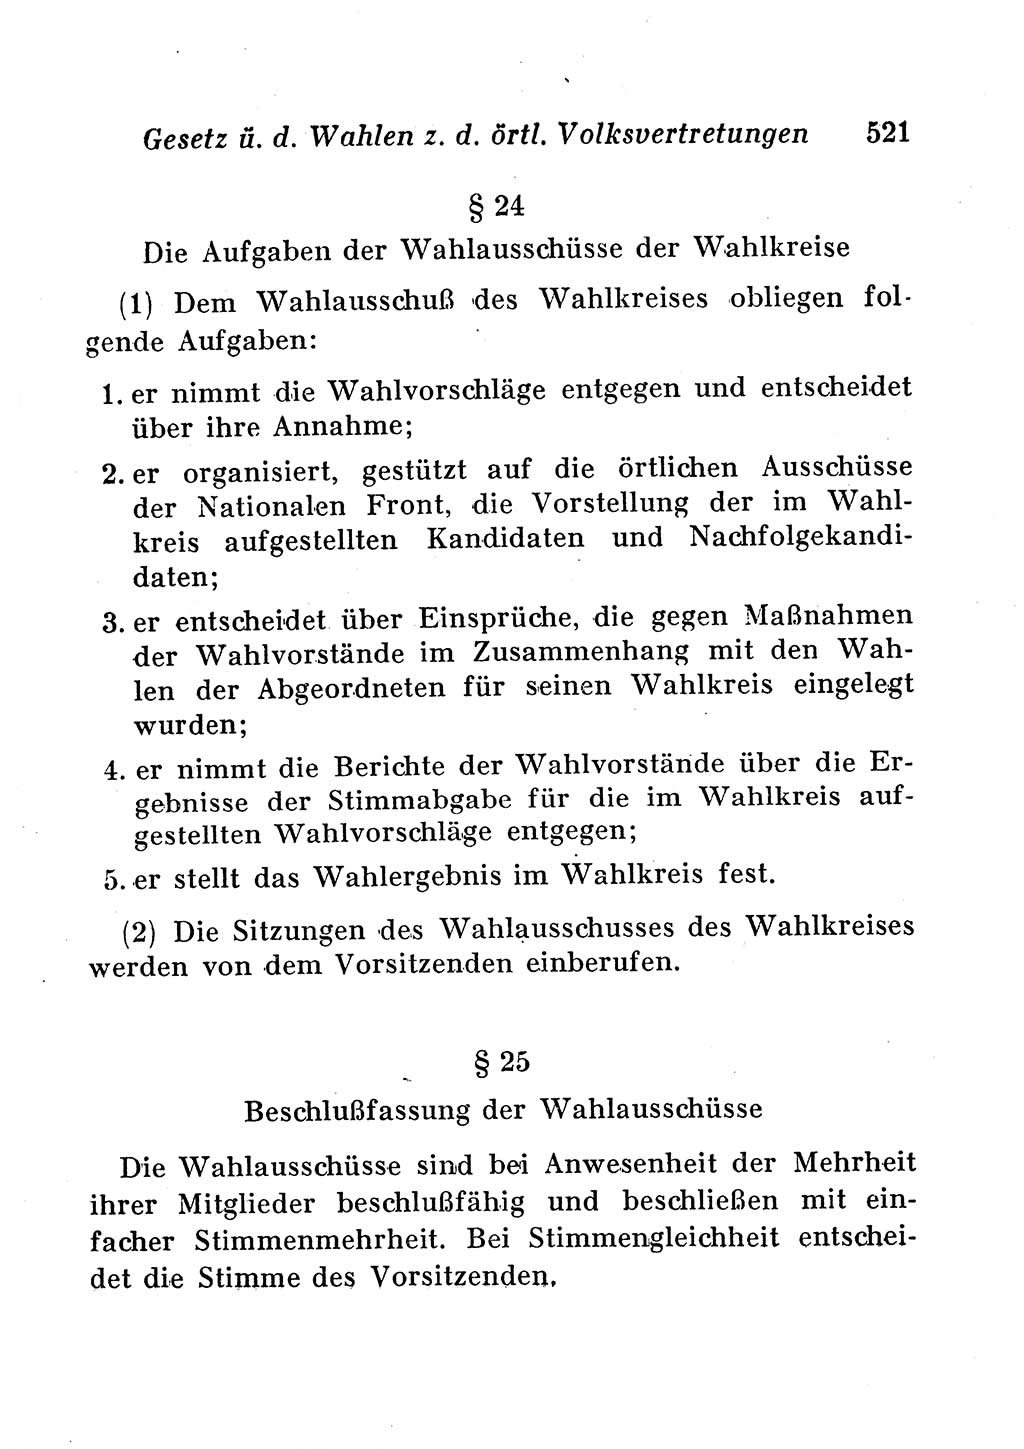 Staats- und verwaltungsrechtliche Gesetze der Deutschen Demokratischen Republik (DDR) 1958, Seite 521 (StVerwR Ges. DDR 1958, S. 521)